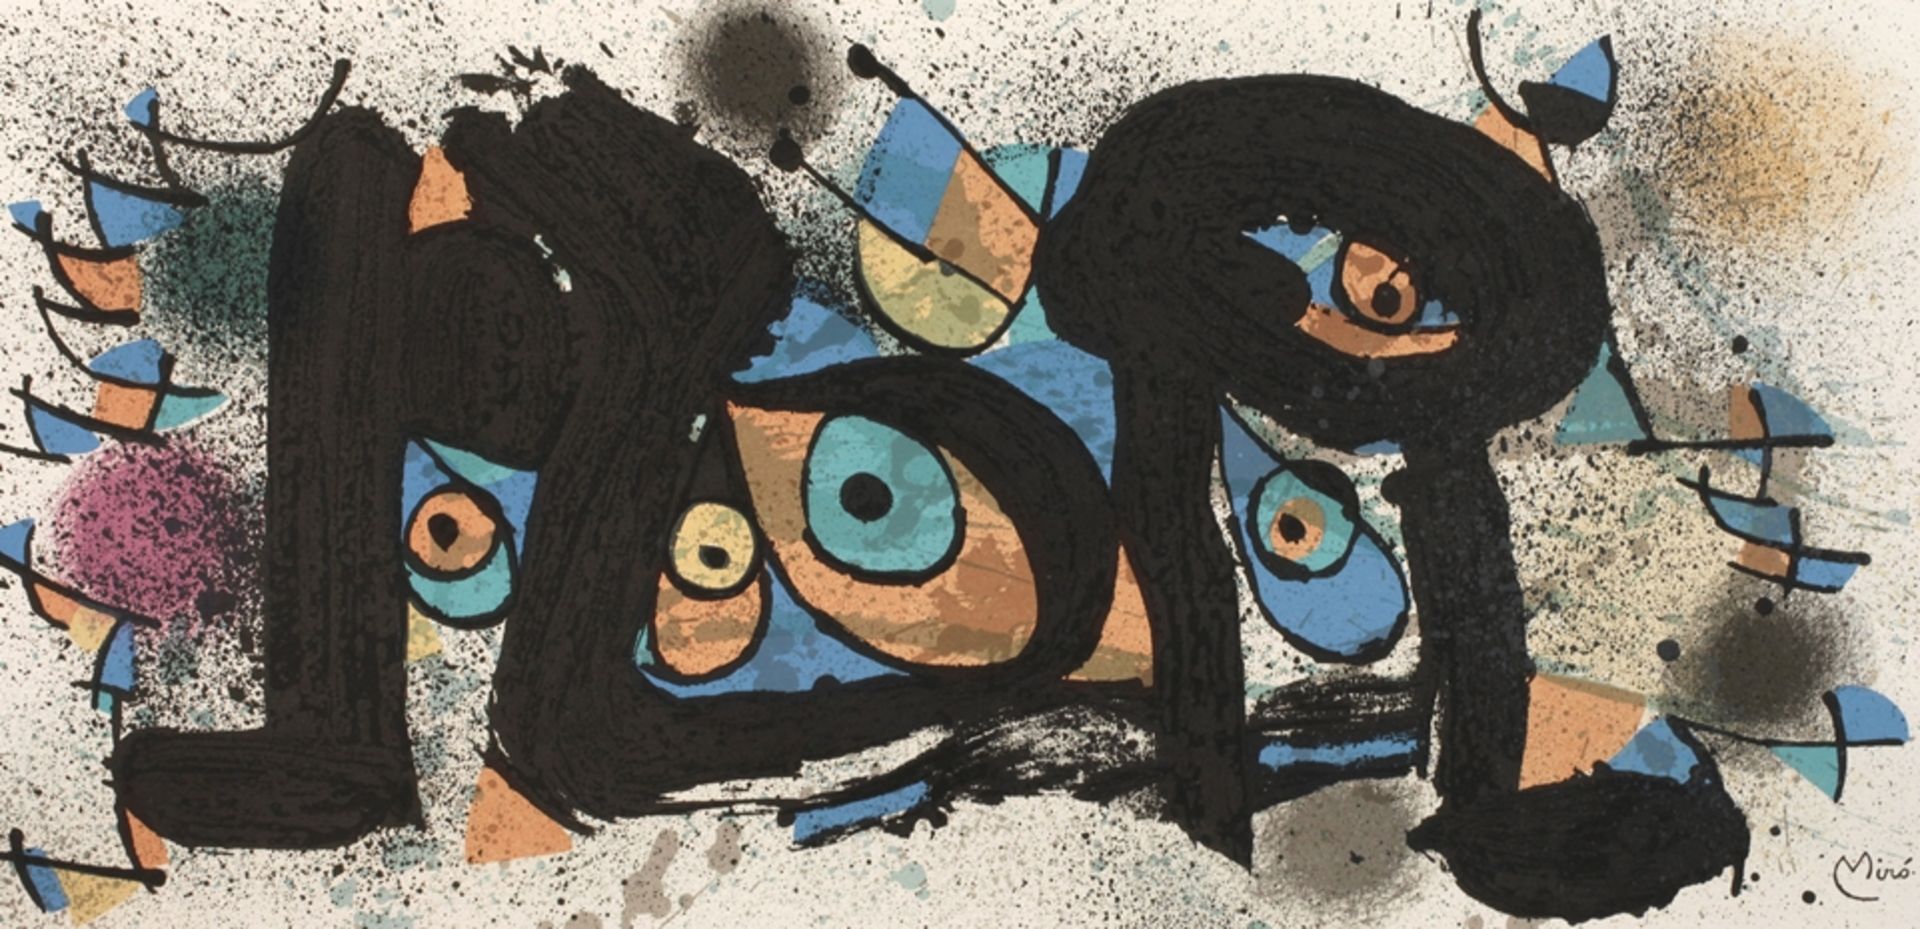 Joan Miró, "Sculpture I"